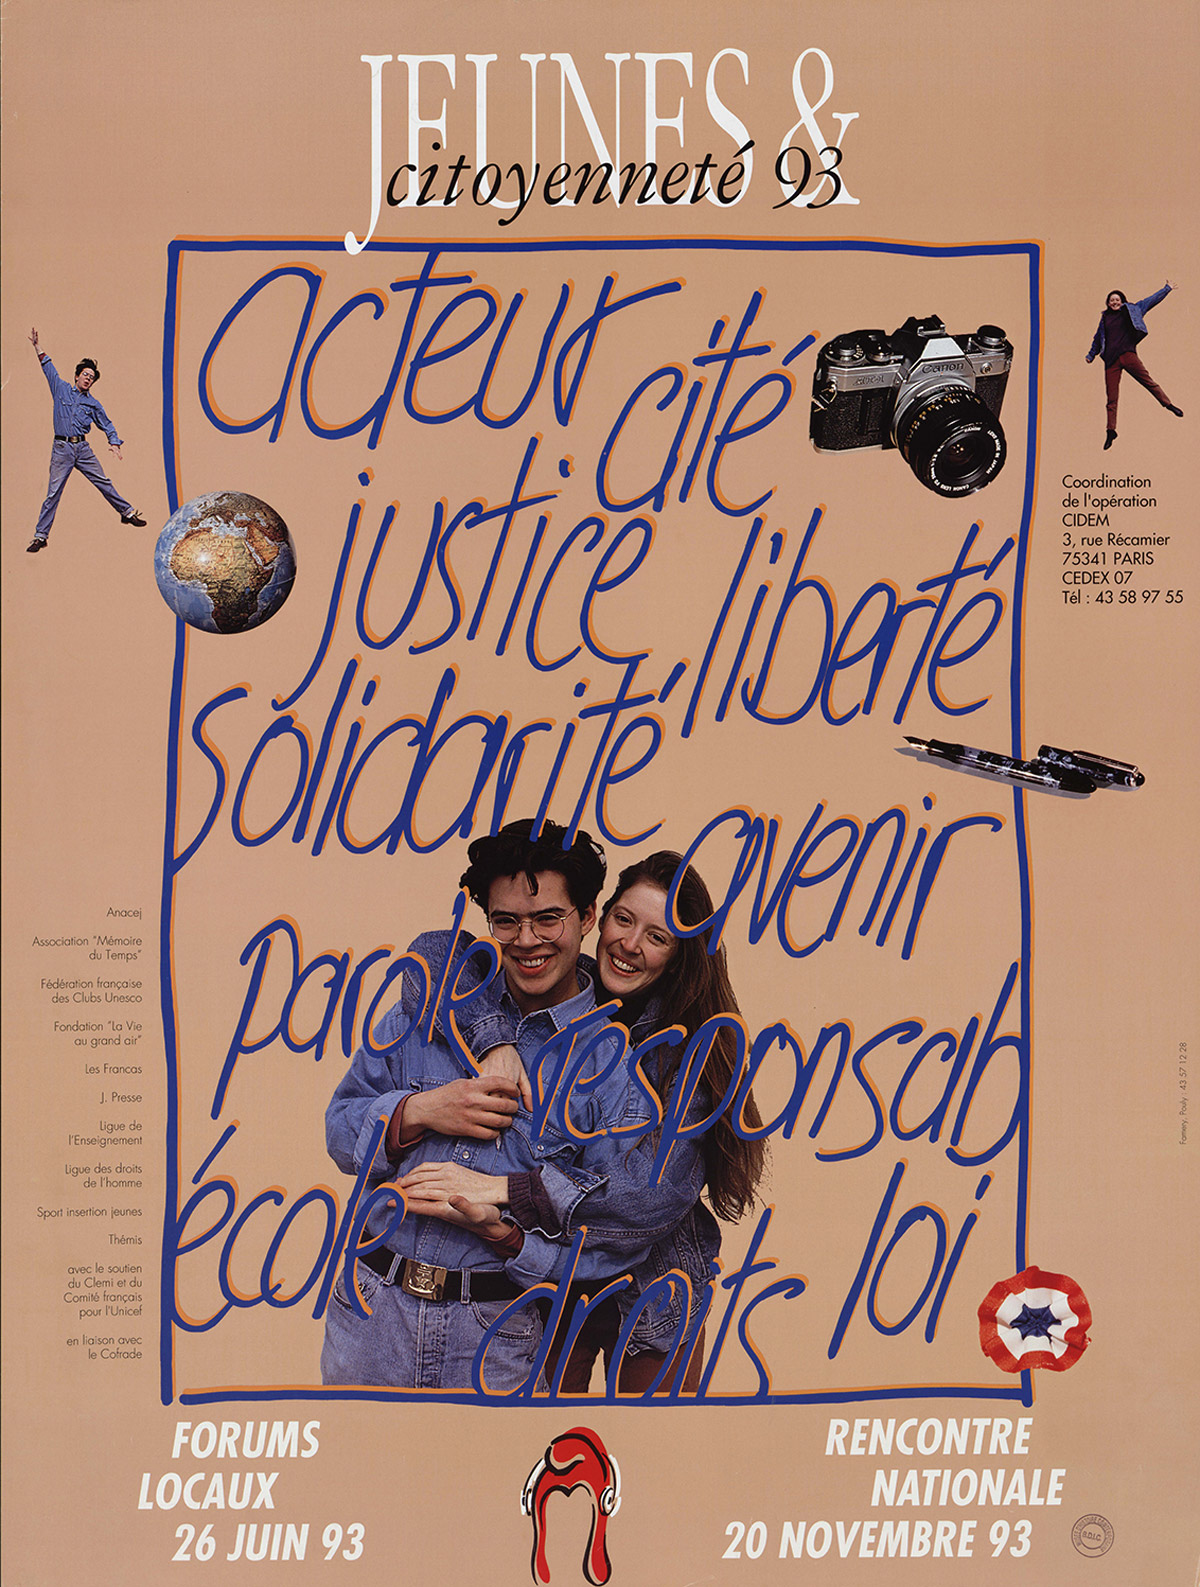 Jeunesse & citoyenneté 93, affiche, 1993